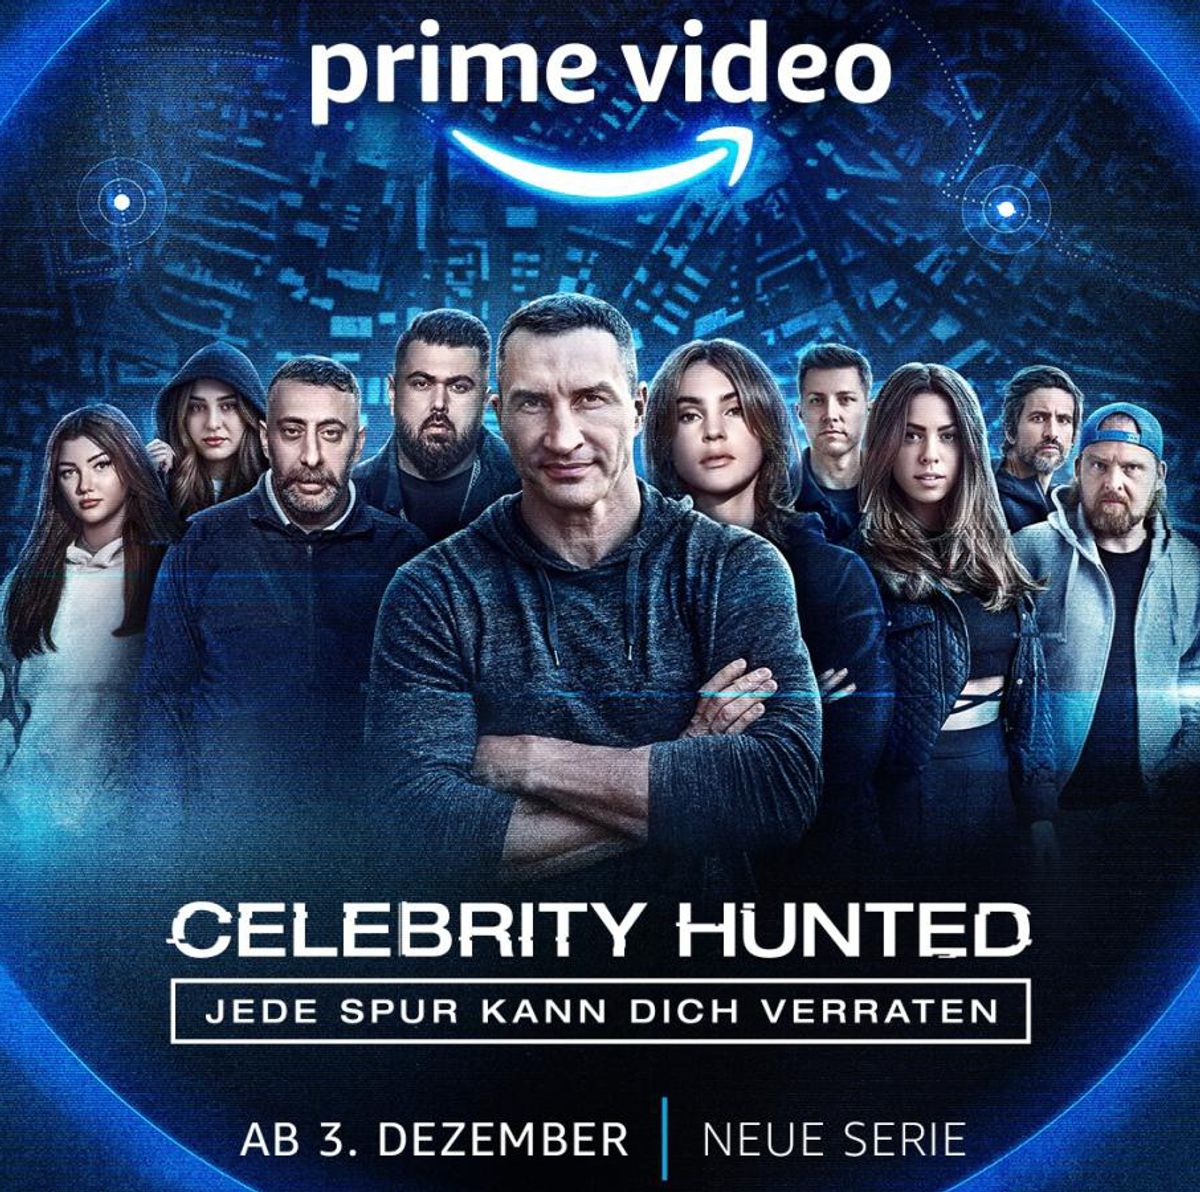 Viele bekannte Gesichter gehen bei der Amazon Prime Serie Celebrity Hunted an den Start.